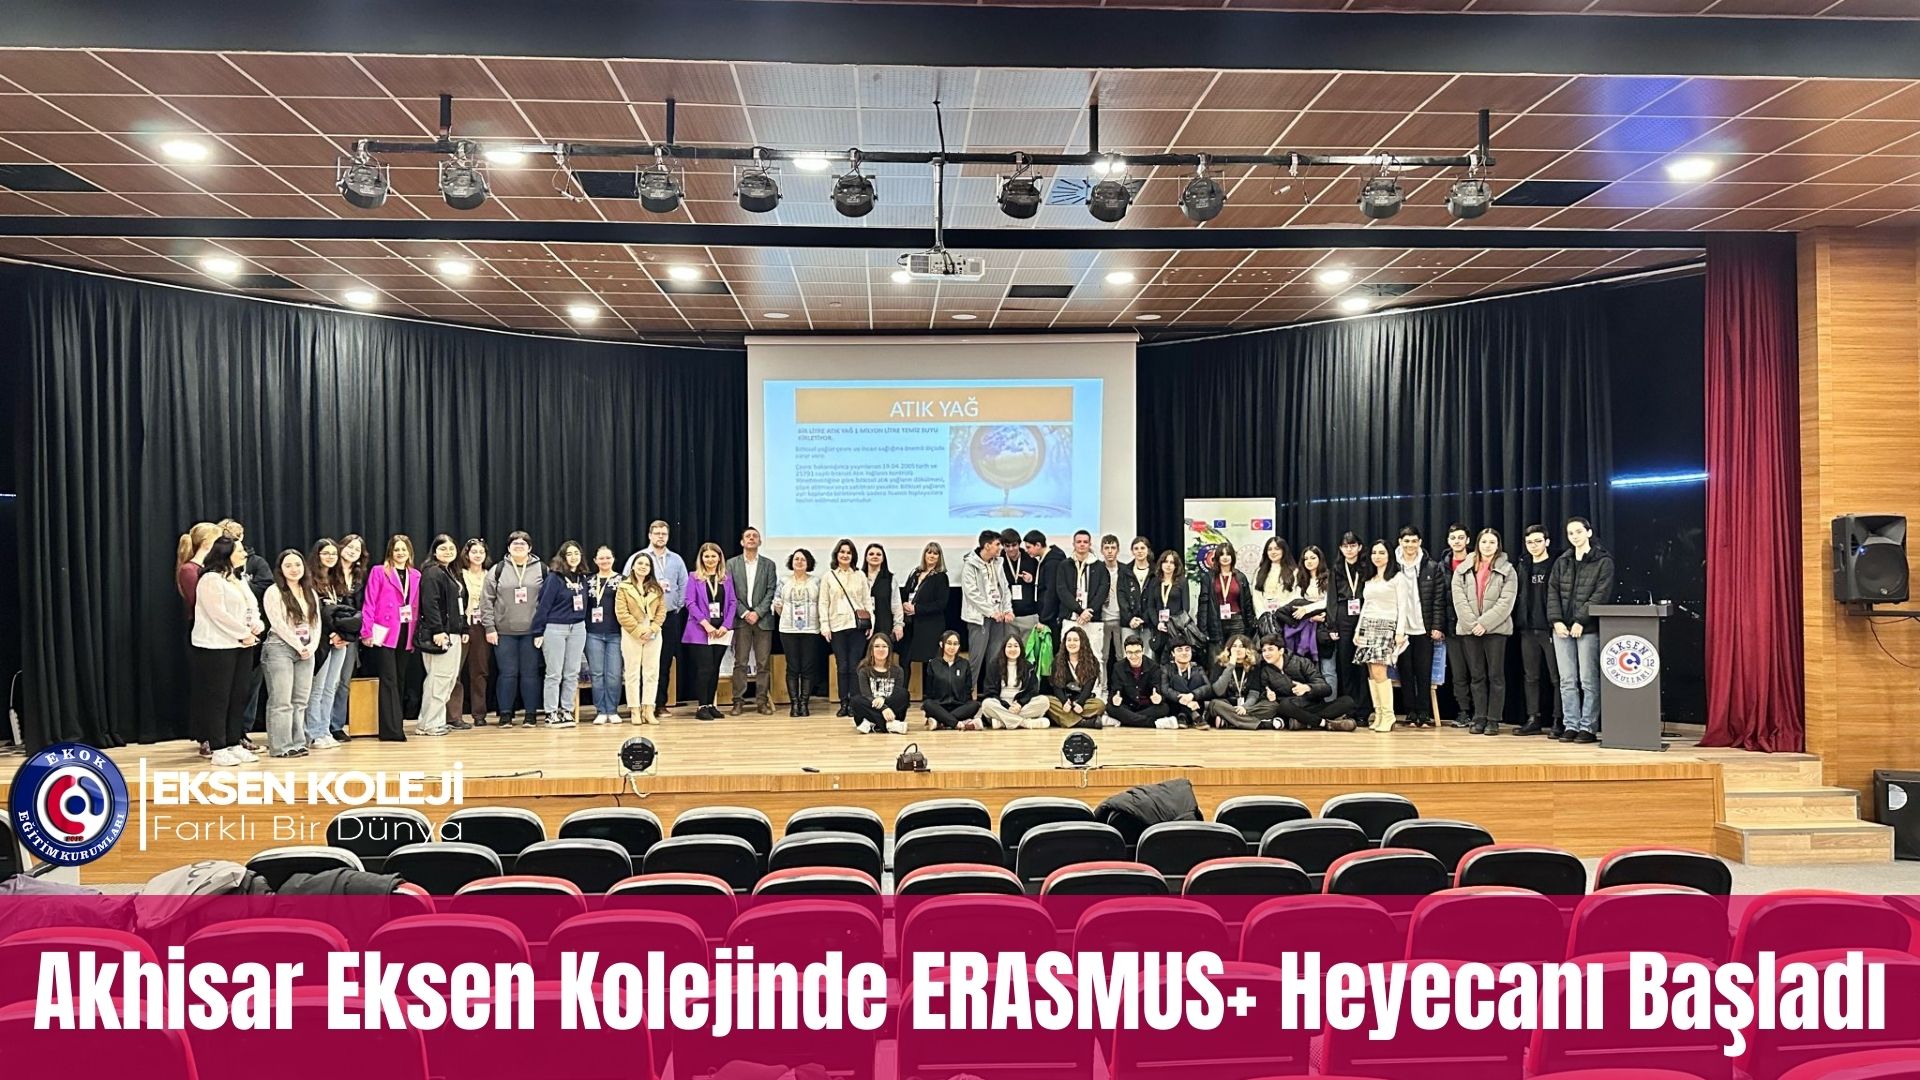 Akhisar Eksen Kolejinde ERASMUS+ Heyecanı Başladı